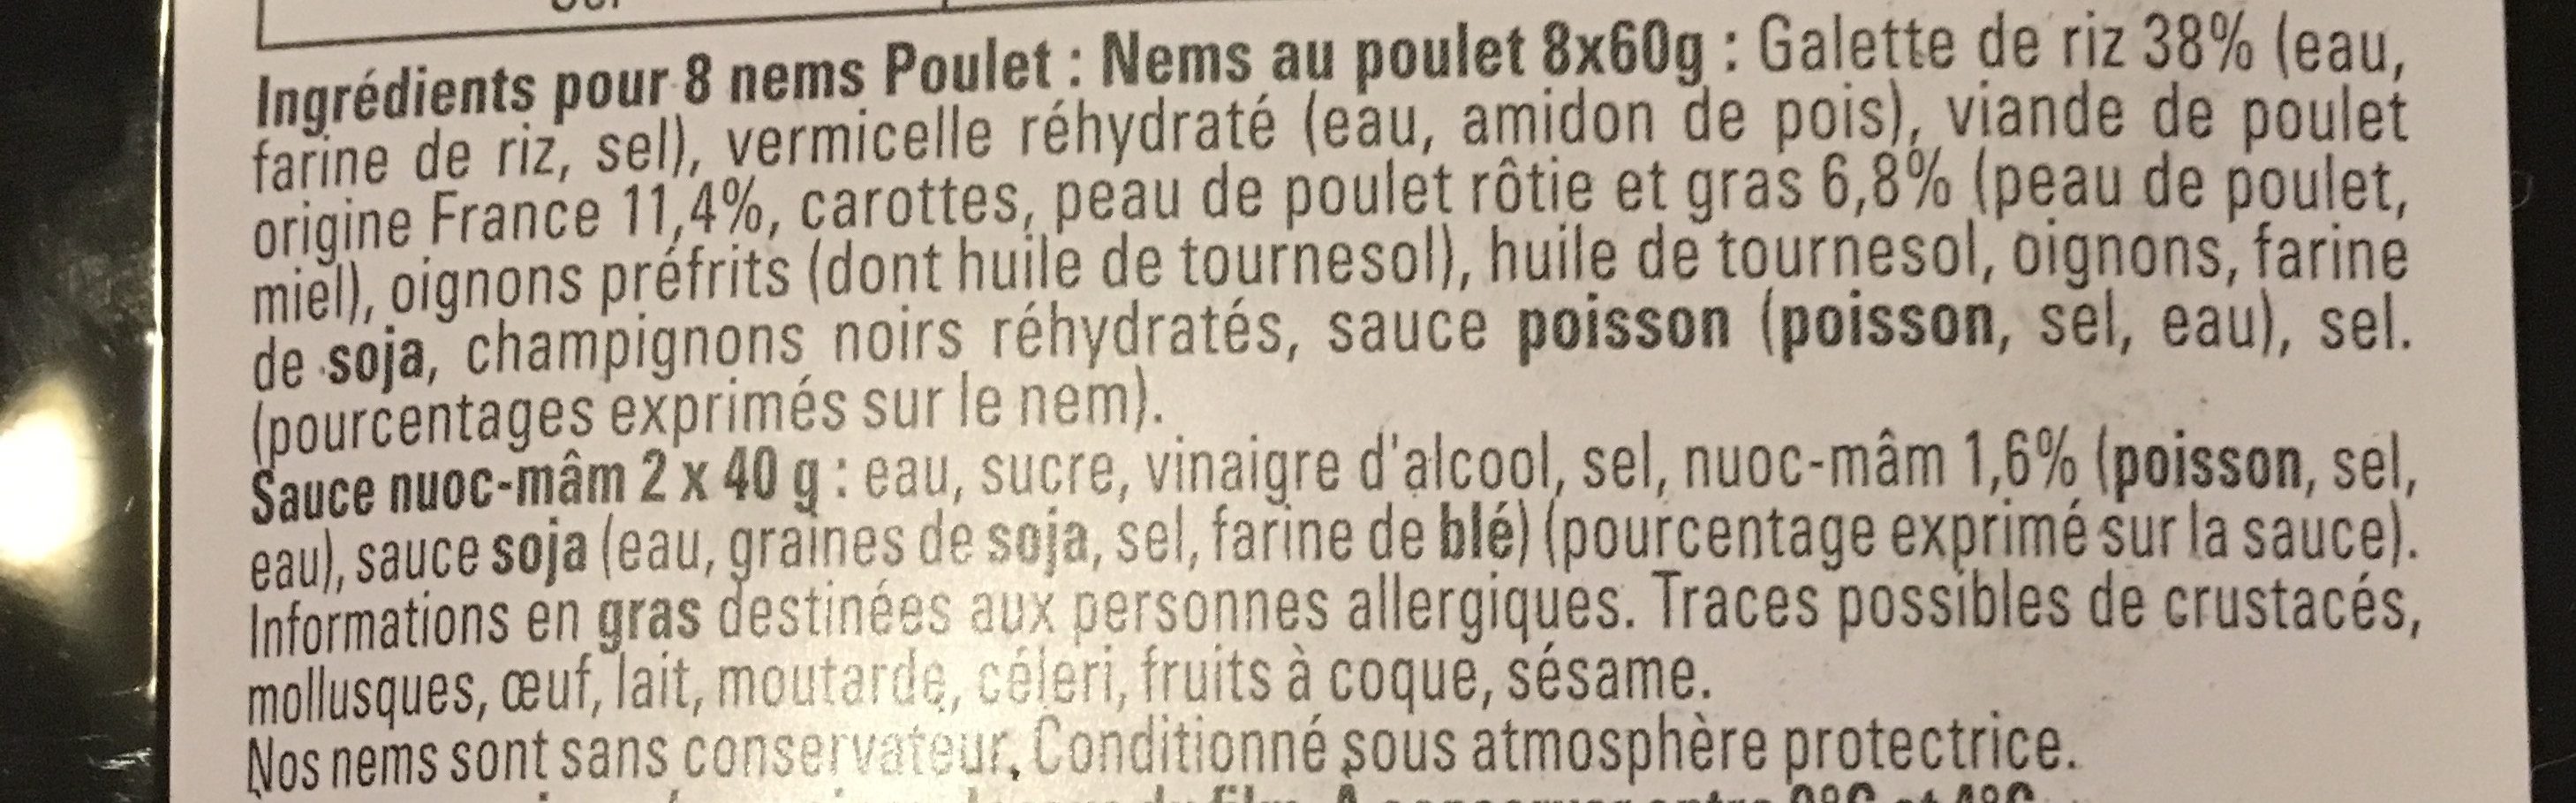 8 Nems Poulet avec Sauce (maxi format) - Ingredients - fr